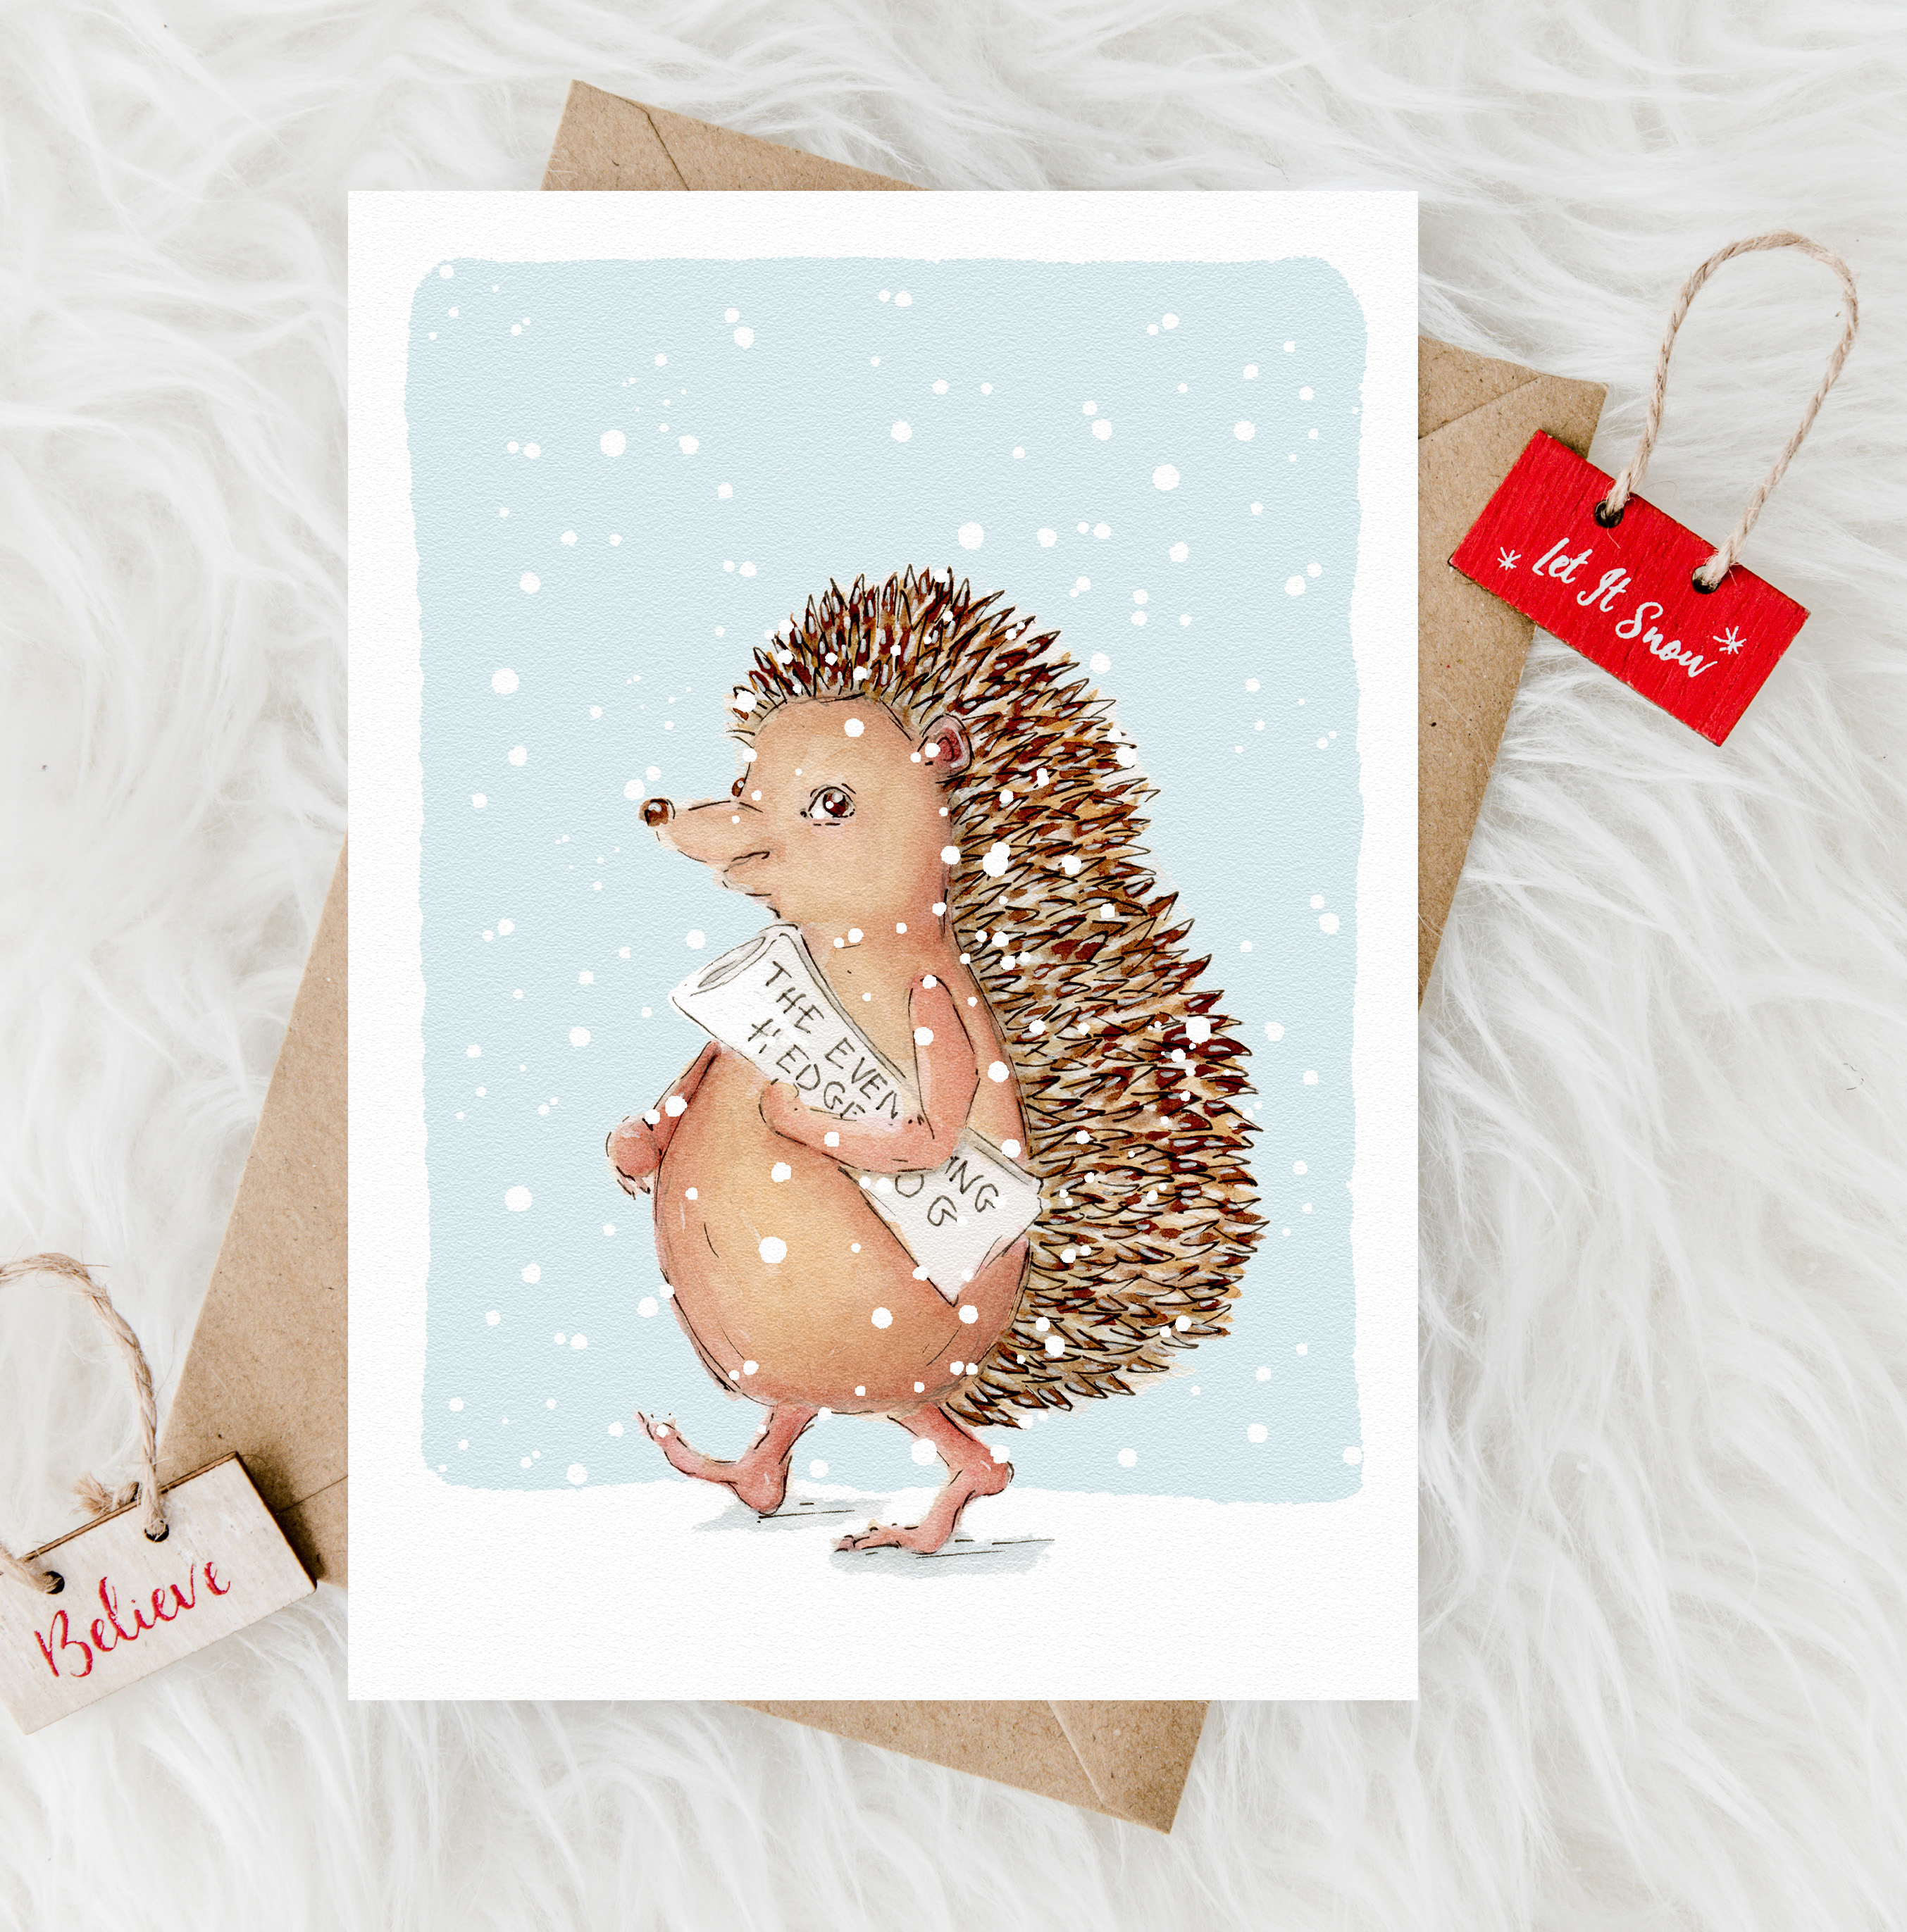 The Evening Hedgehog Christmas Special